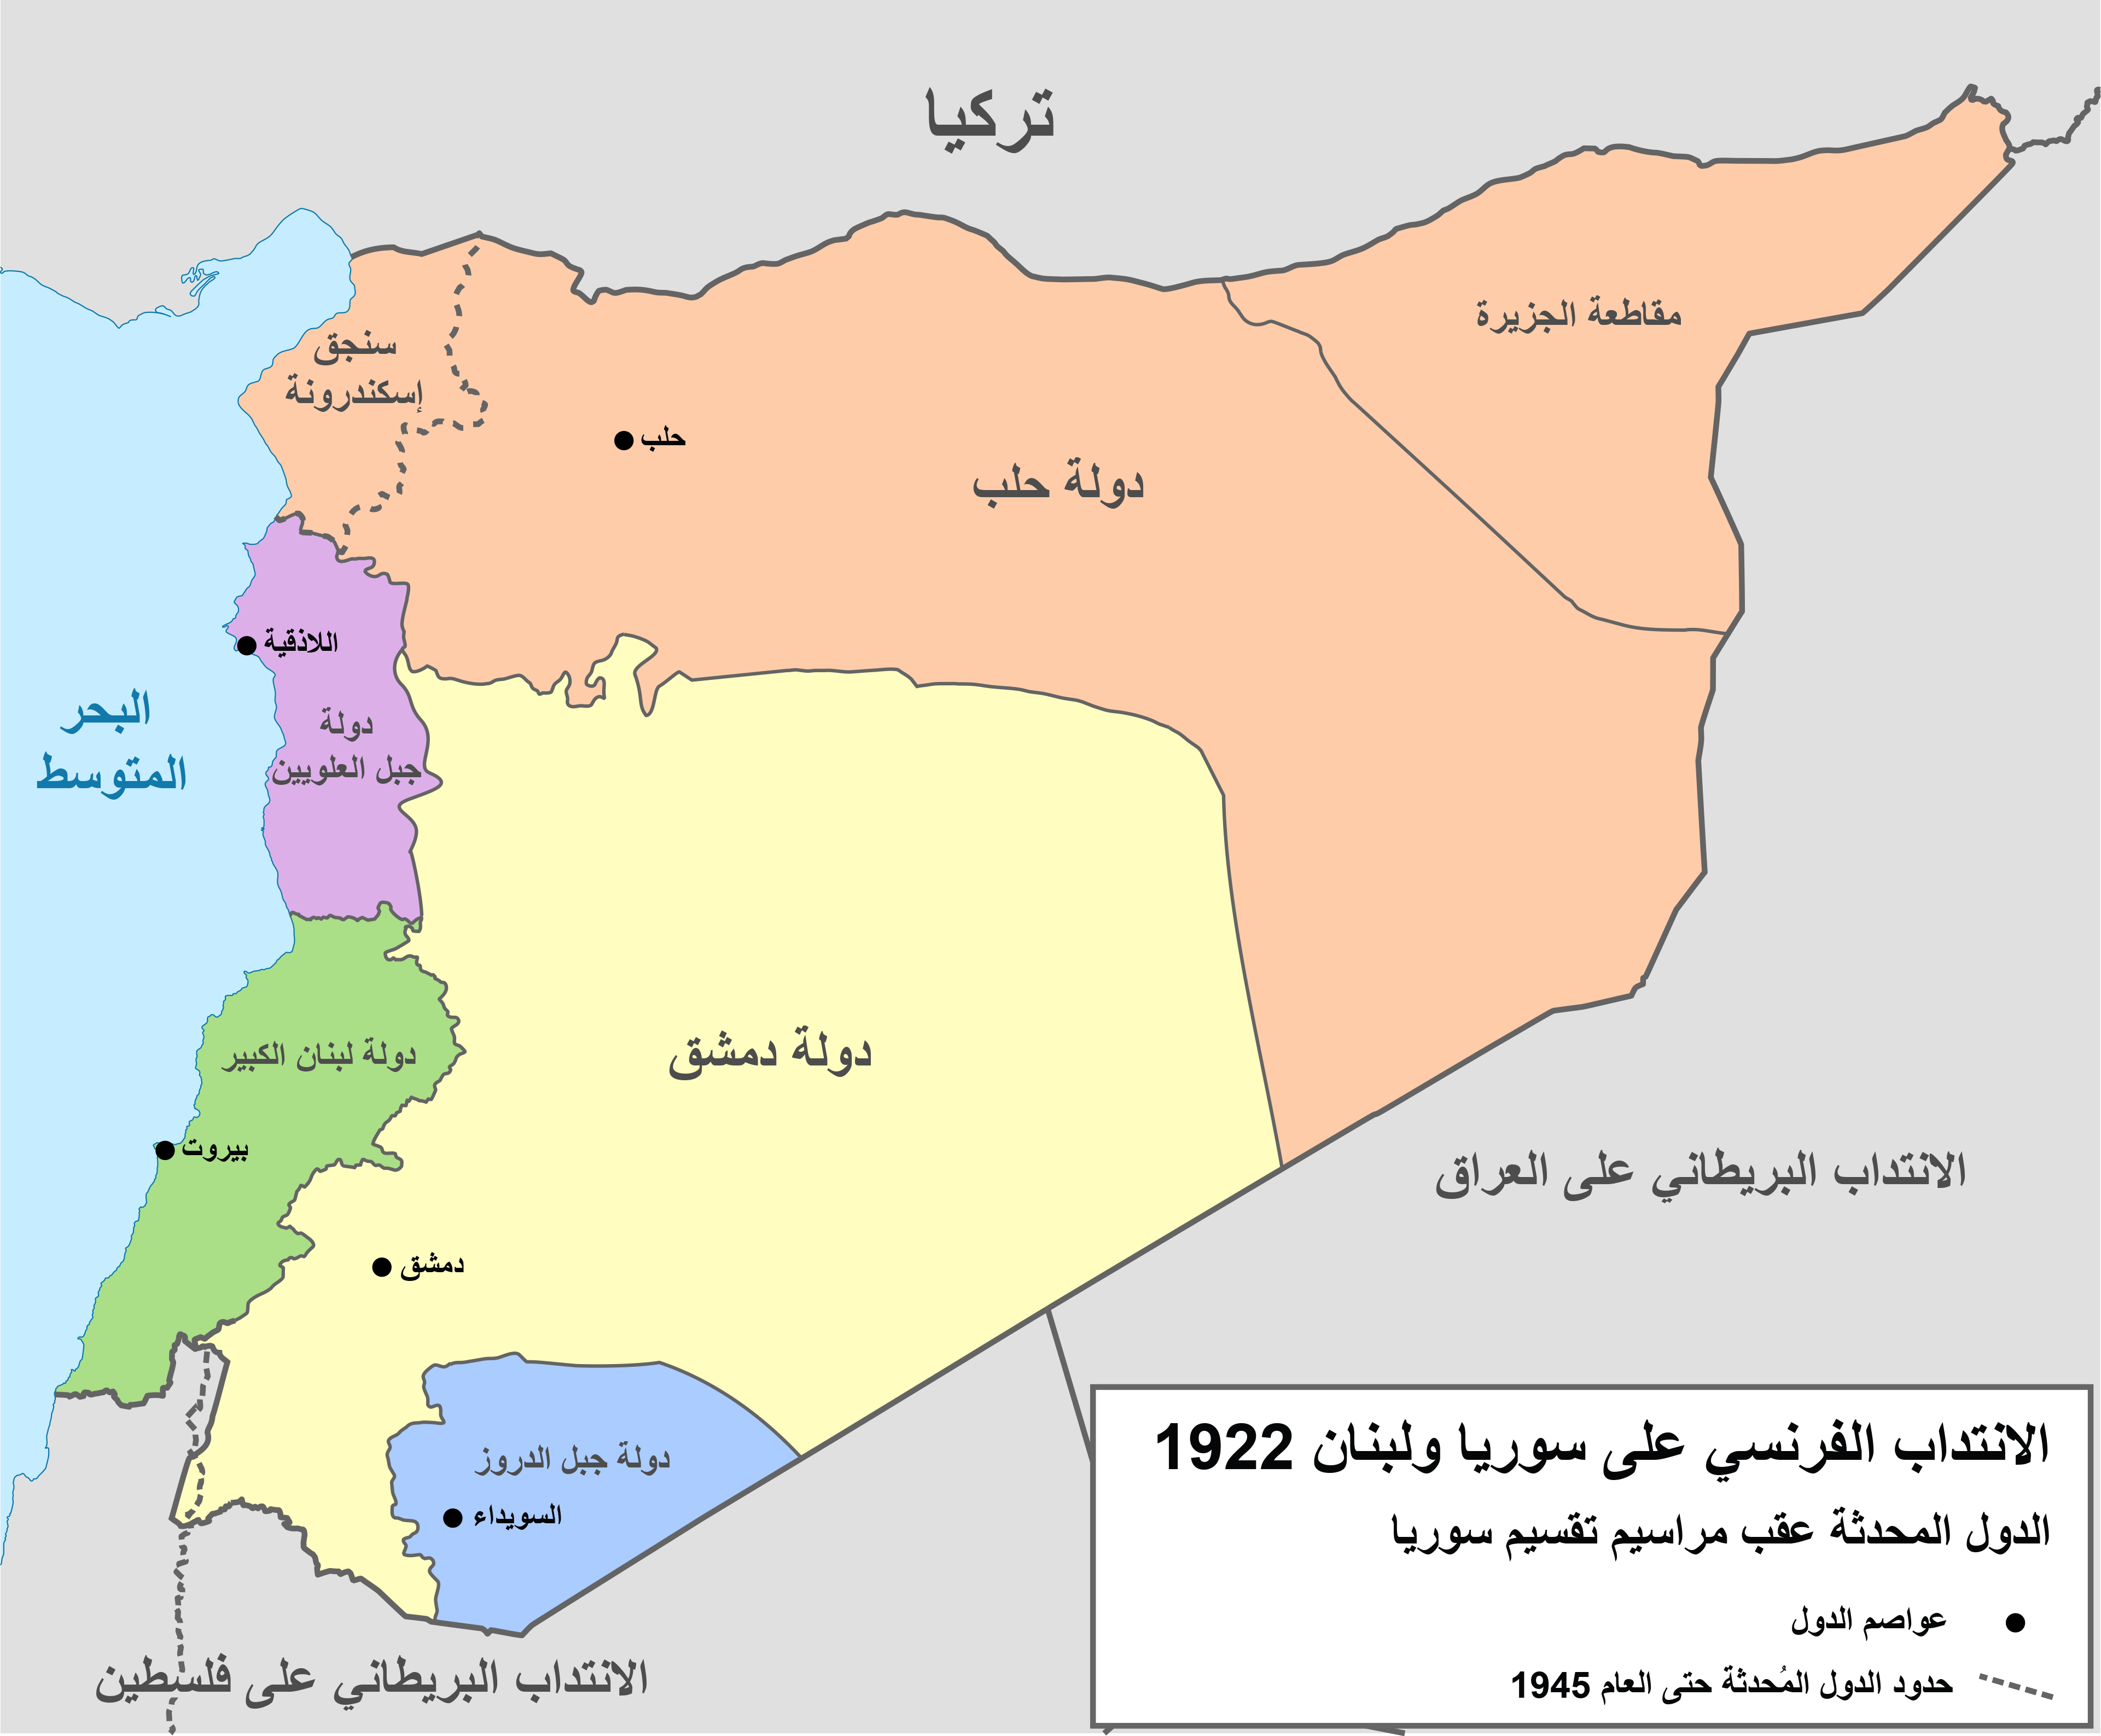 الدويلات السورية ولواء اسكندرون و لبنان الكبير حسب تقسيمات الجنرال غورو